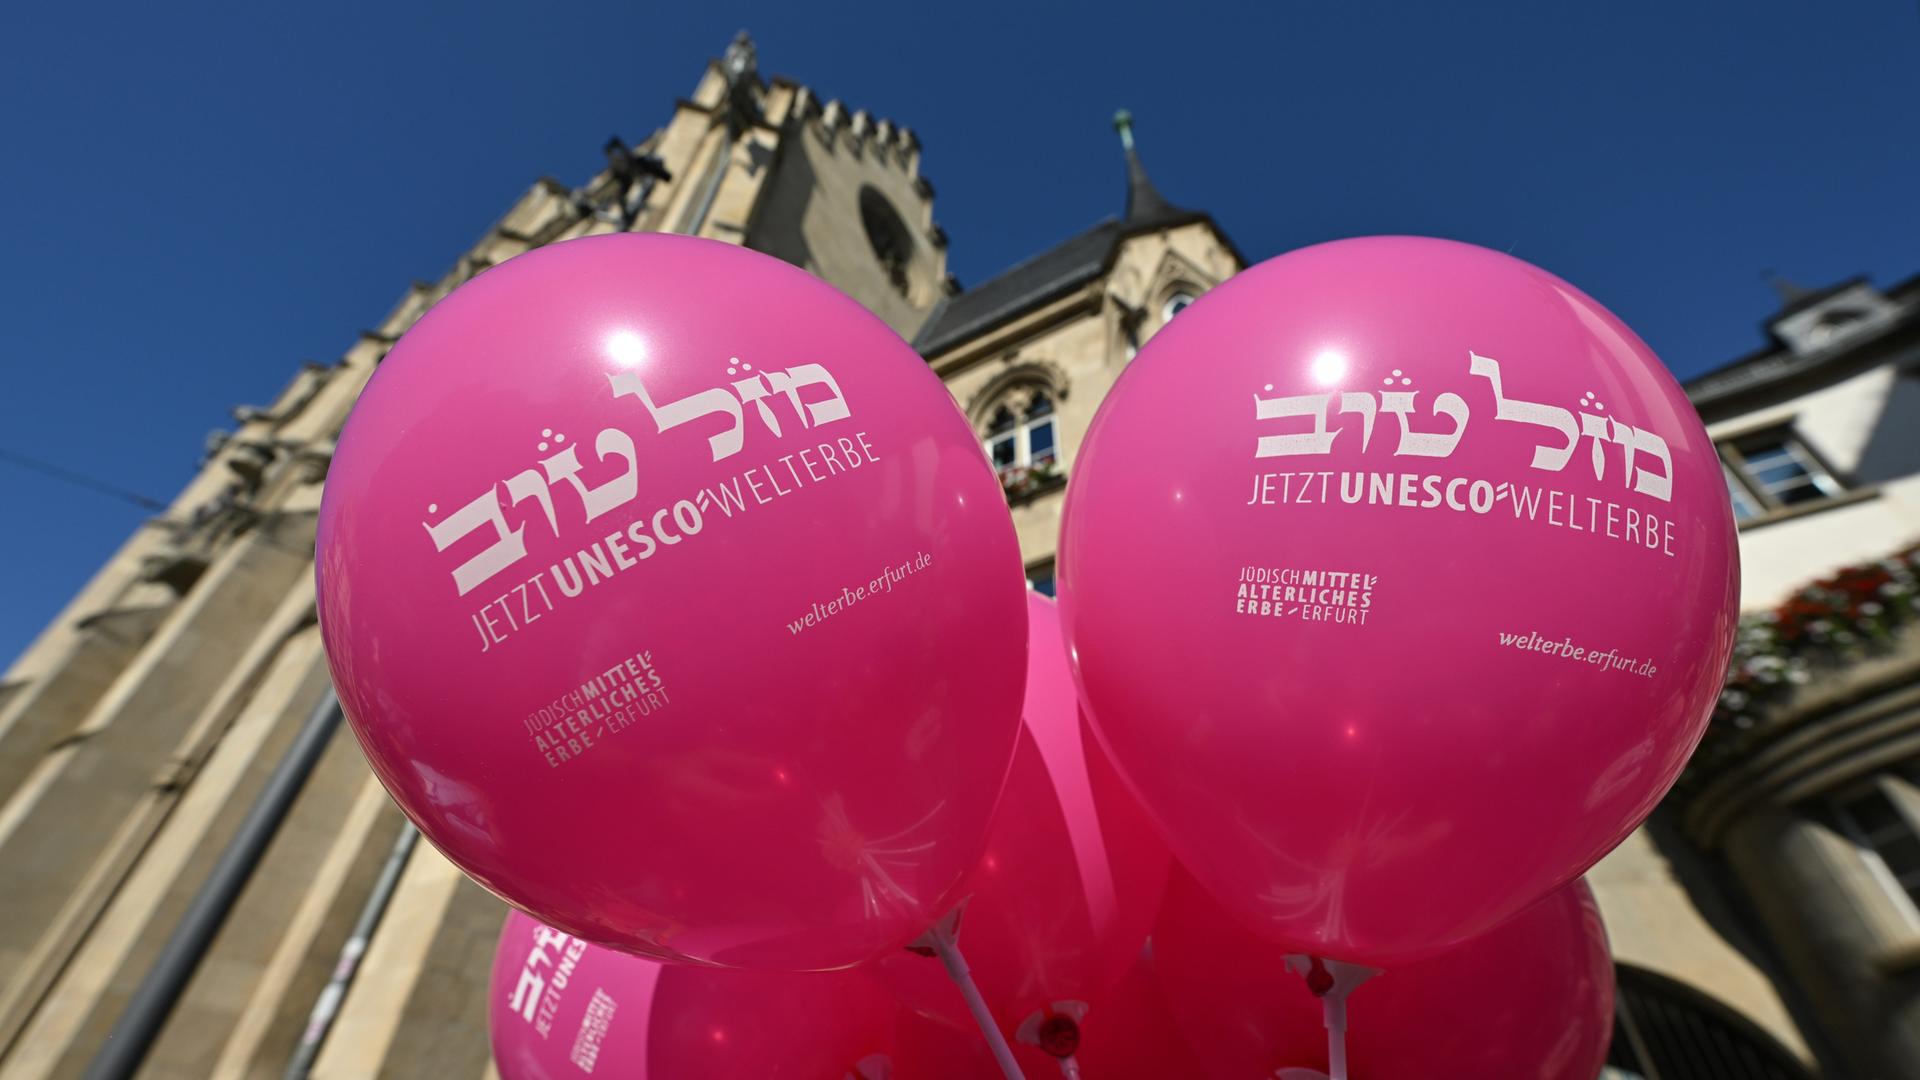 Erfurt feiert die Aufnahme des Jüdisch-Mittelalterlichen Erbe der Stadt Erfurt als Unesco-Weltkulturerbe. „Jetzt UNESCO-Welterbe“ steht auf den rosa Luftballons vor dem Erfurter Rathaus. 